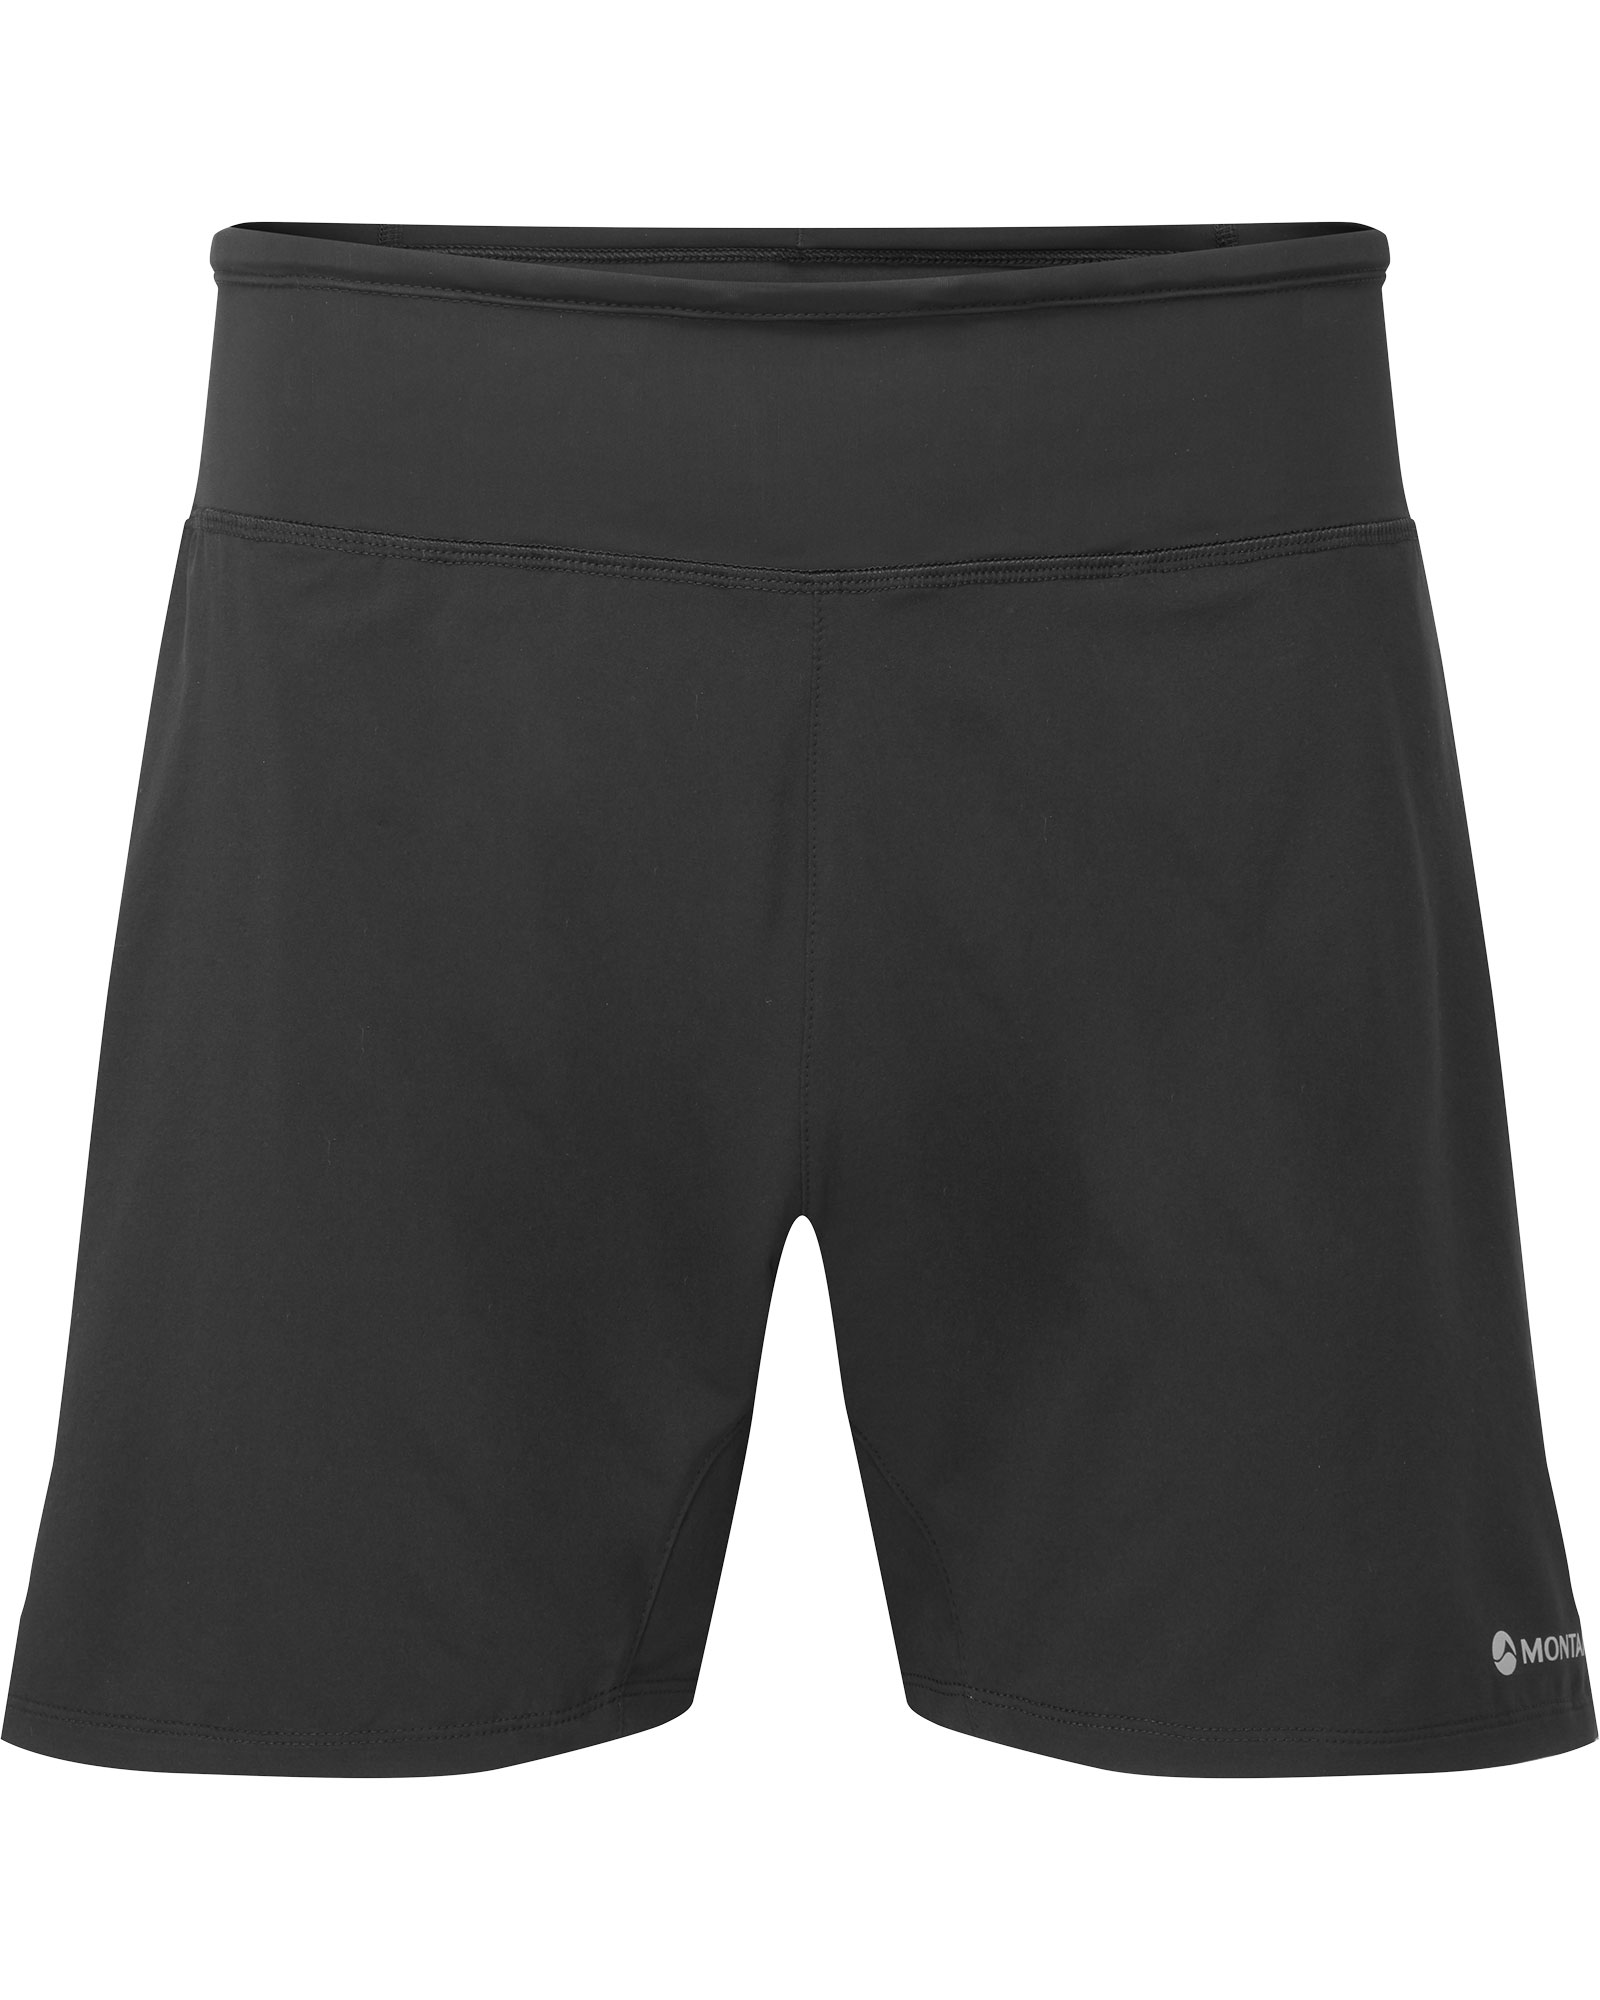 Montane Slipstream Men’s 5" Shorts - black S